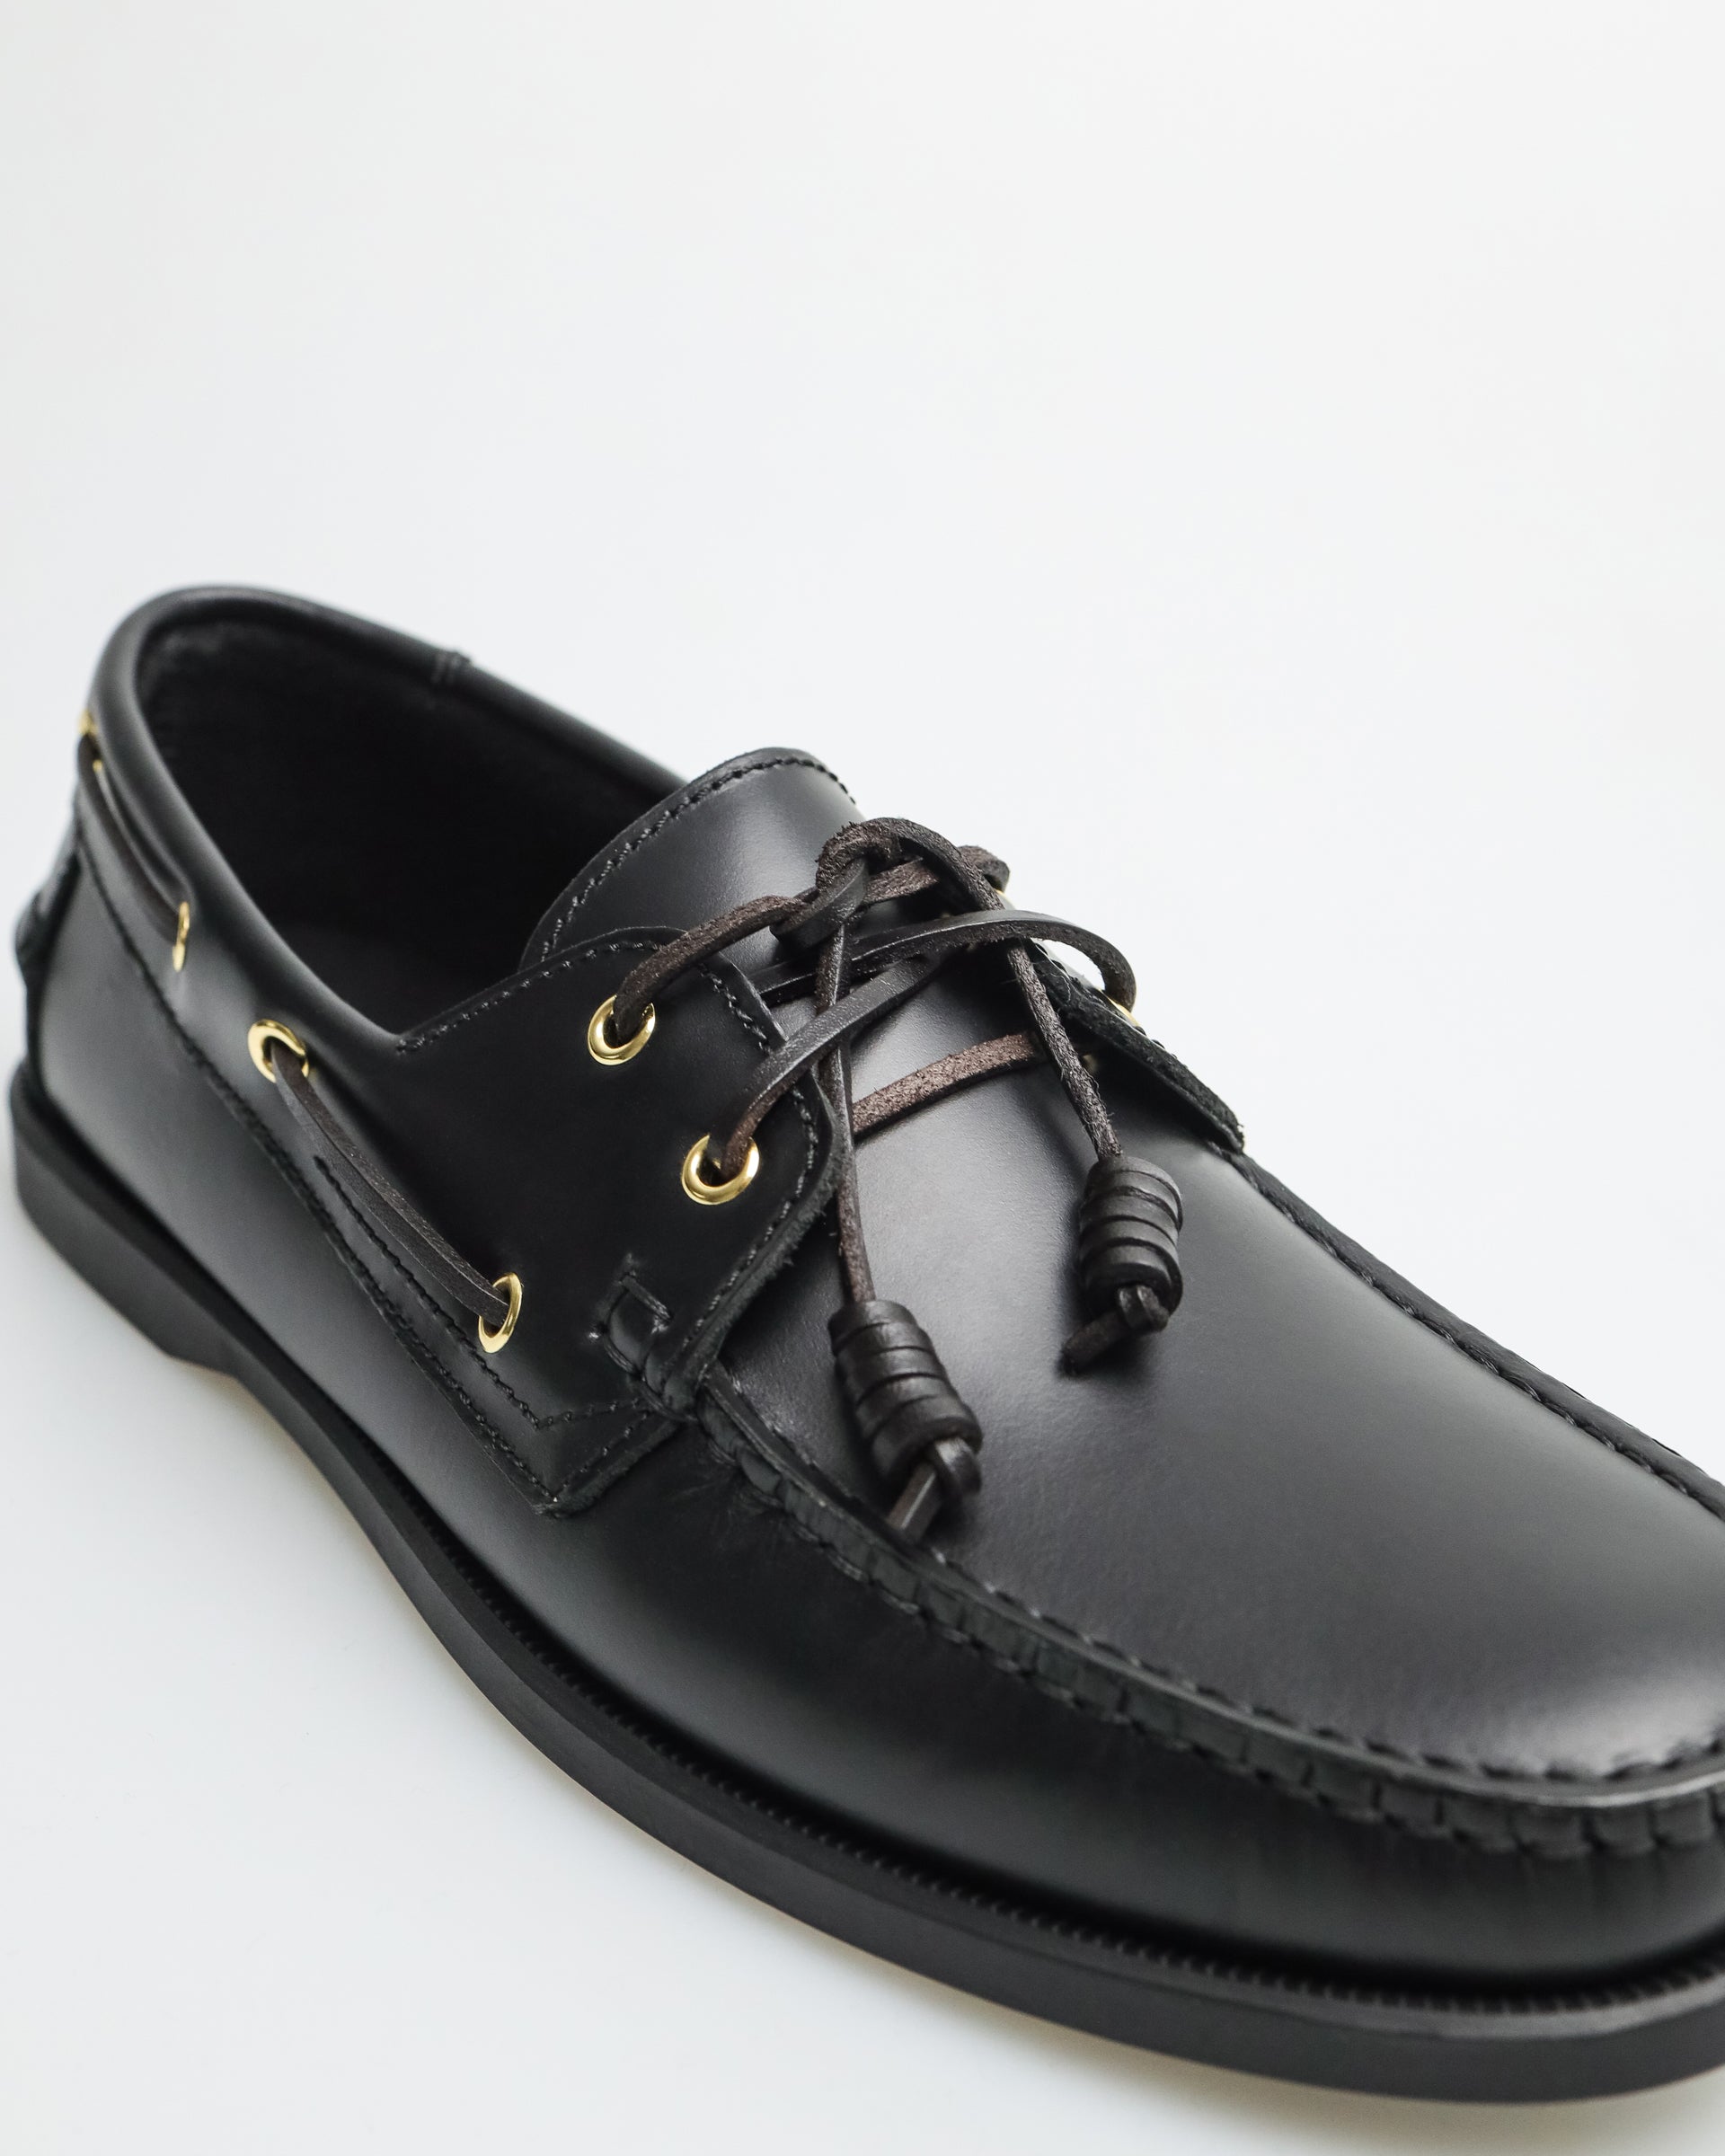 Tomaz C328 Men's Leather Boat Shoes (Black) – TOMAZ